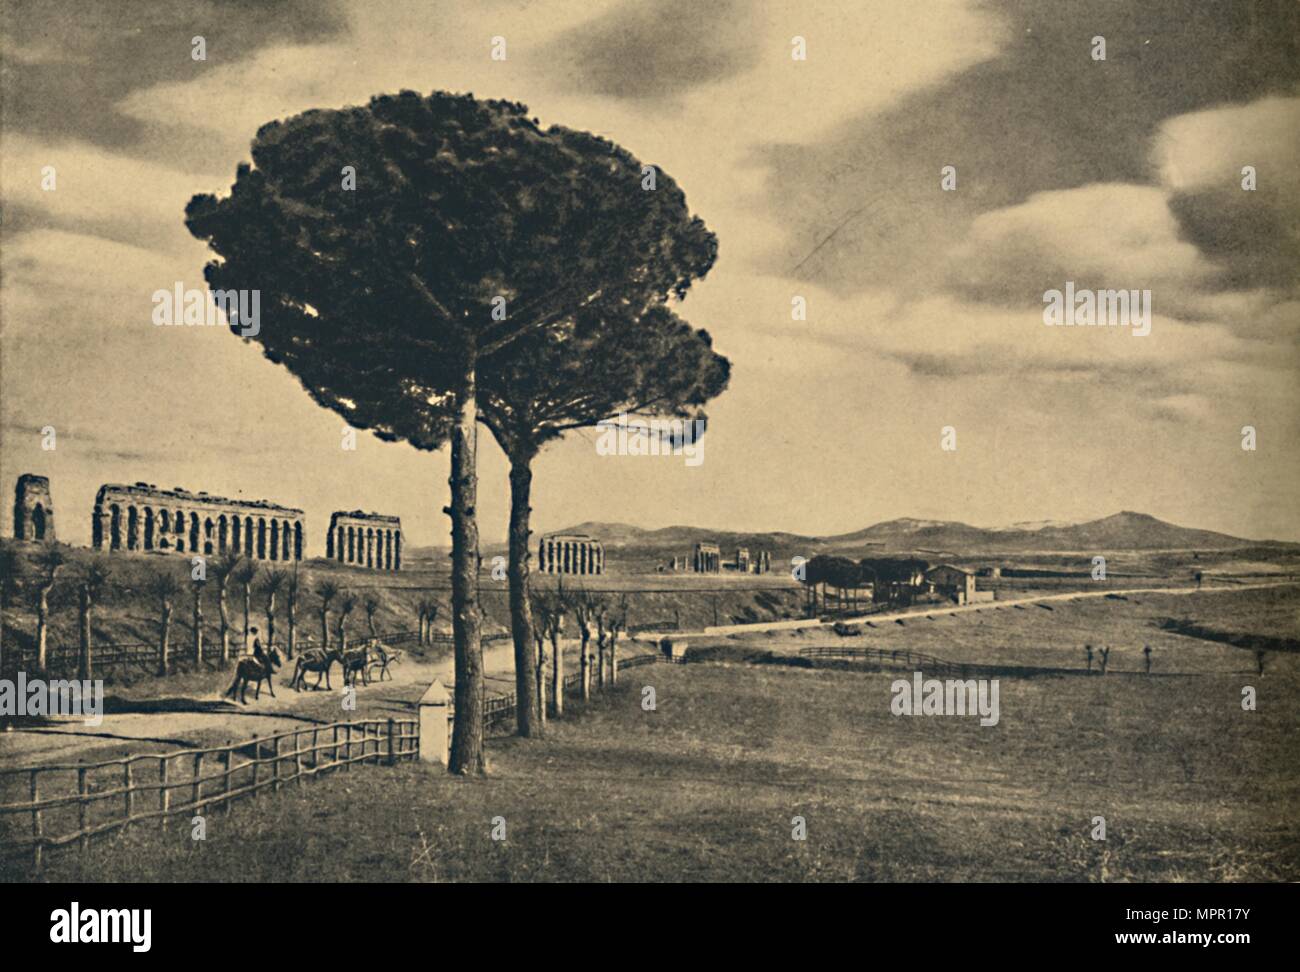 Roma - Neio Via Appia - Rovine dell'Aquaduct di Claudio. I Colli Albani',  1910. Artista: sconosciuto Foto stock - Alamy